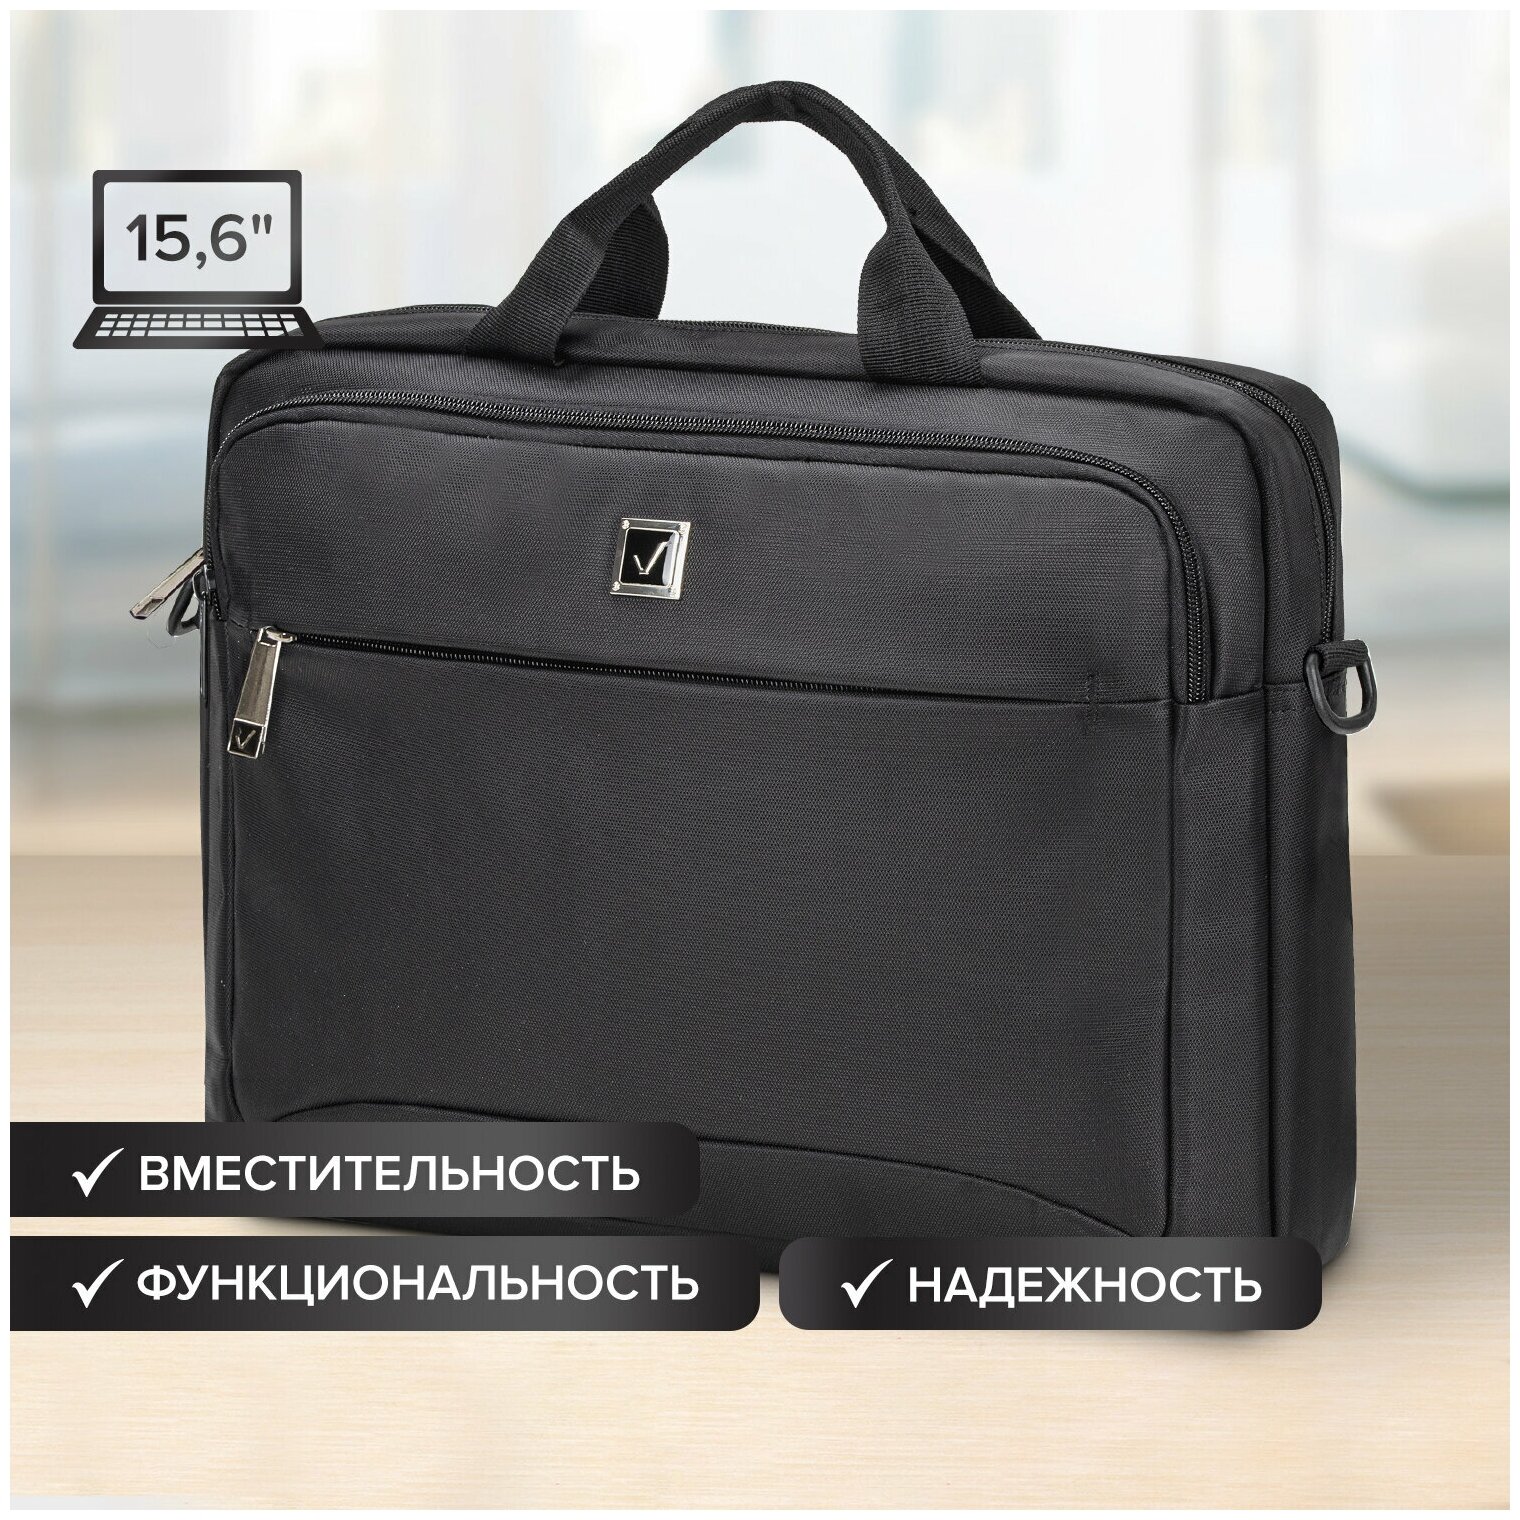 Сумка-портфель (Protect) с отделением для ноутбука 15,6, 2 отделения, черная, 30х40х7 см